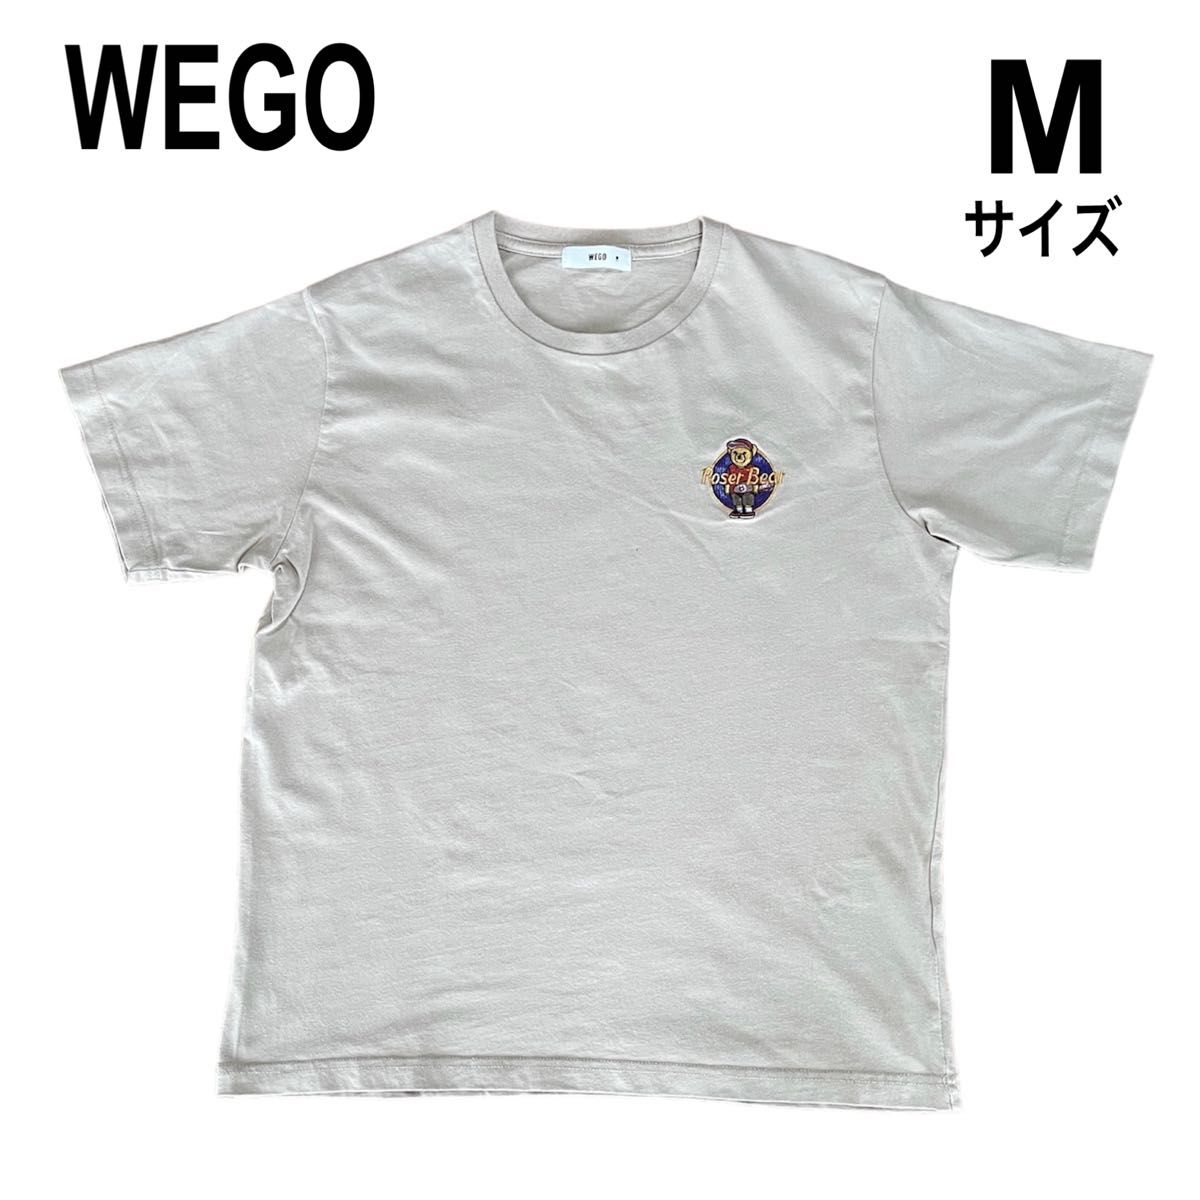 【WEGO】メンズ 男の子 Tシャツ ハーフパンツ ショートパンツ 2枚セット Mサイズ